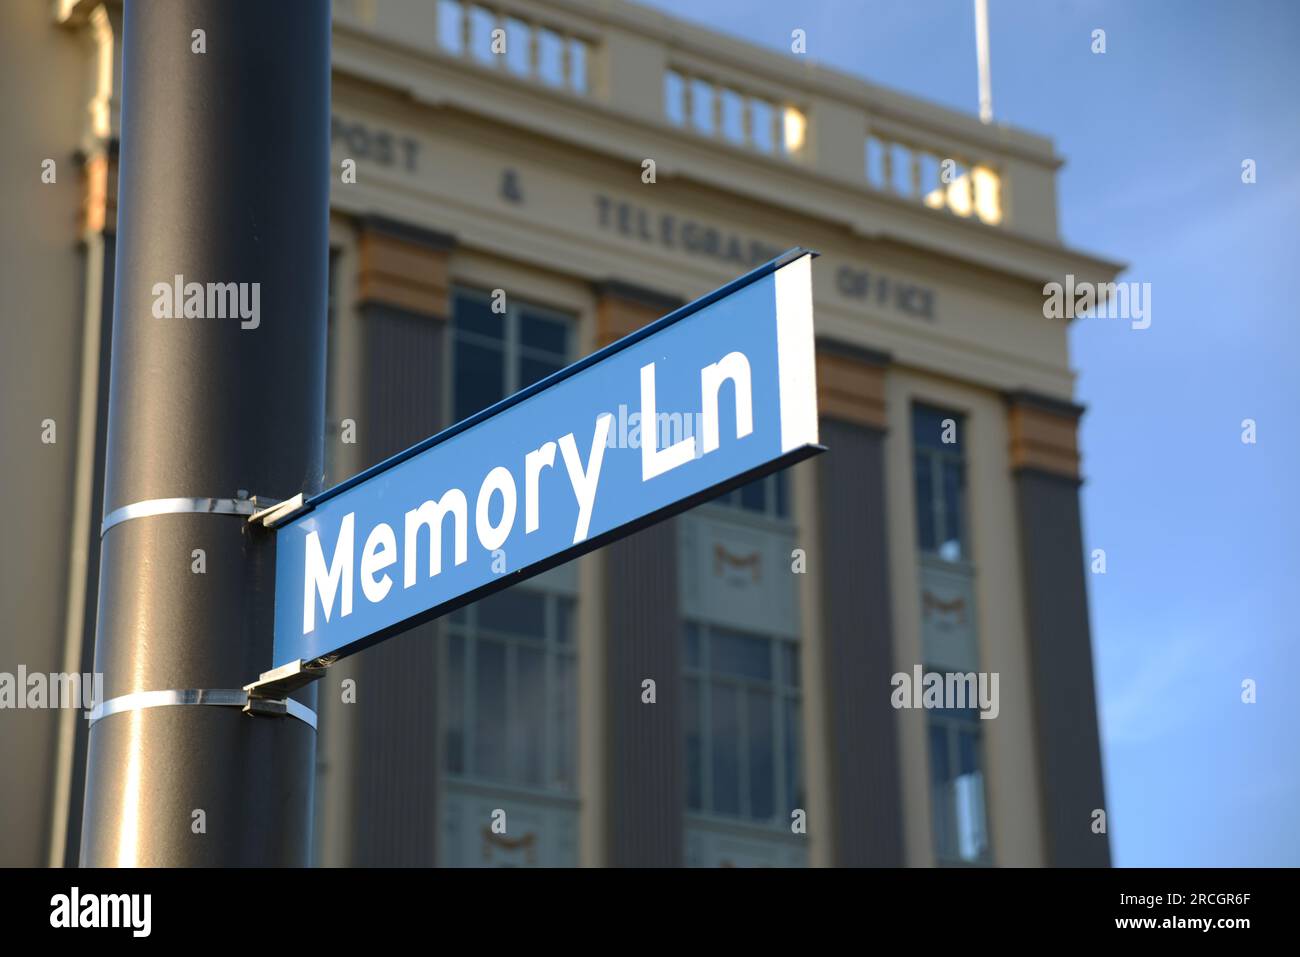 Una señal de calle para Memory Lane en Christchurch, Nueva Zelanda Foto de stock